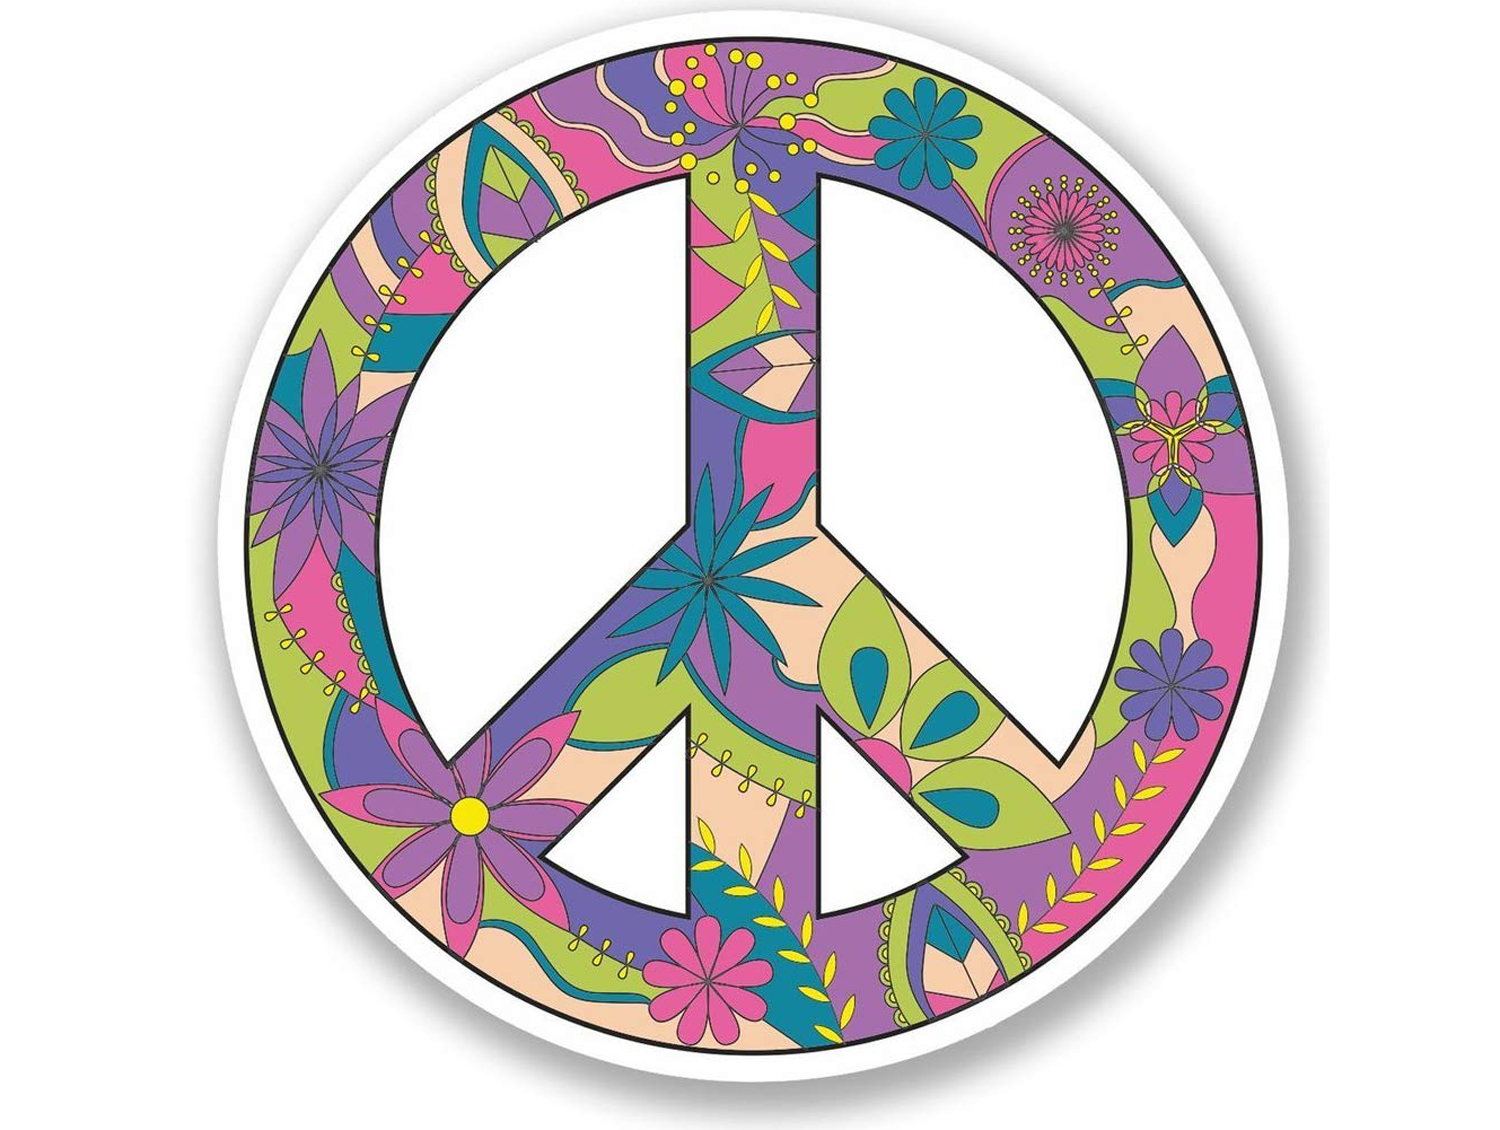 I migliori gadget con il simbolo della pace per celebrare la non violenza